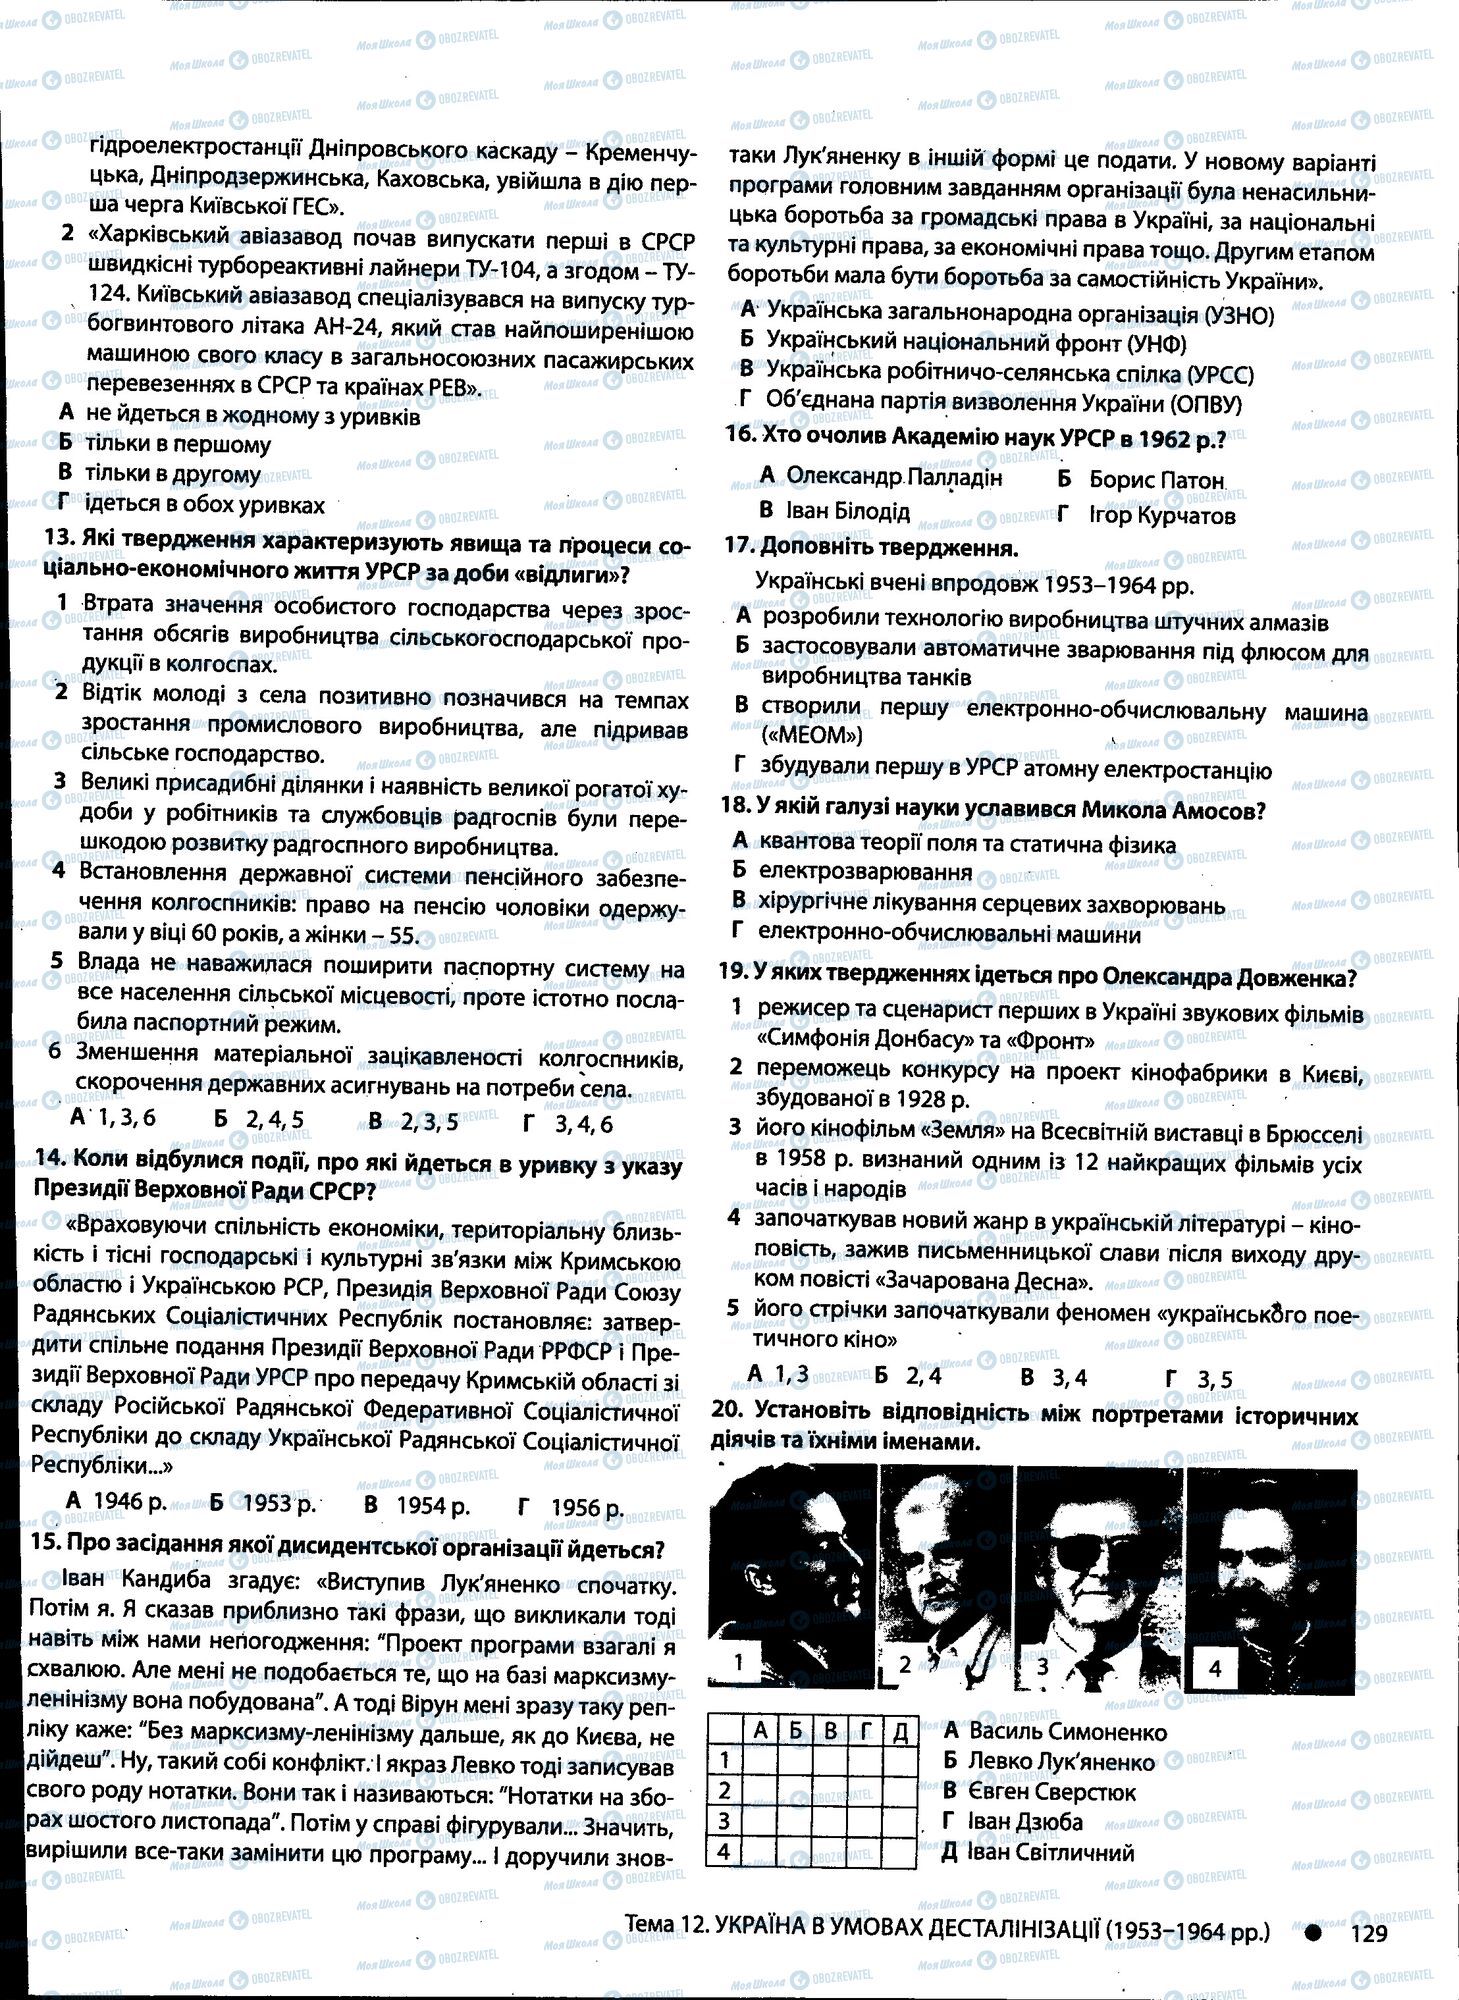 ДПА История Украины 11 класс страница 129